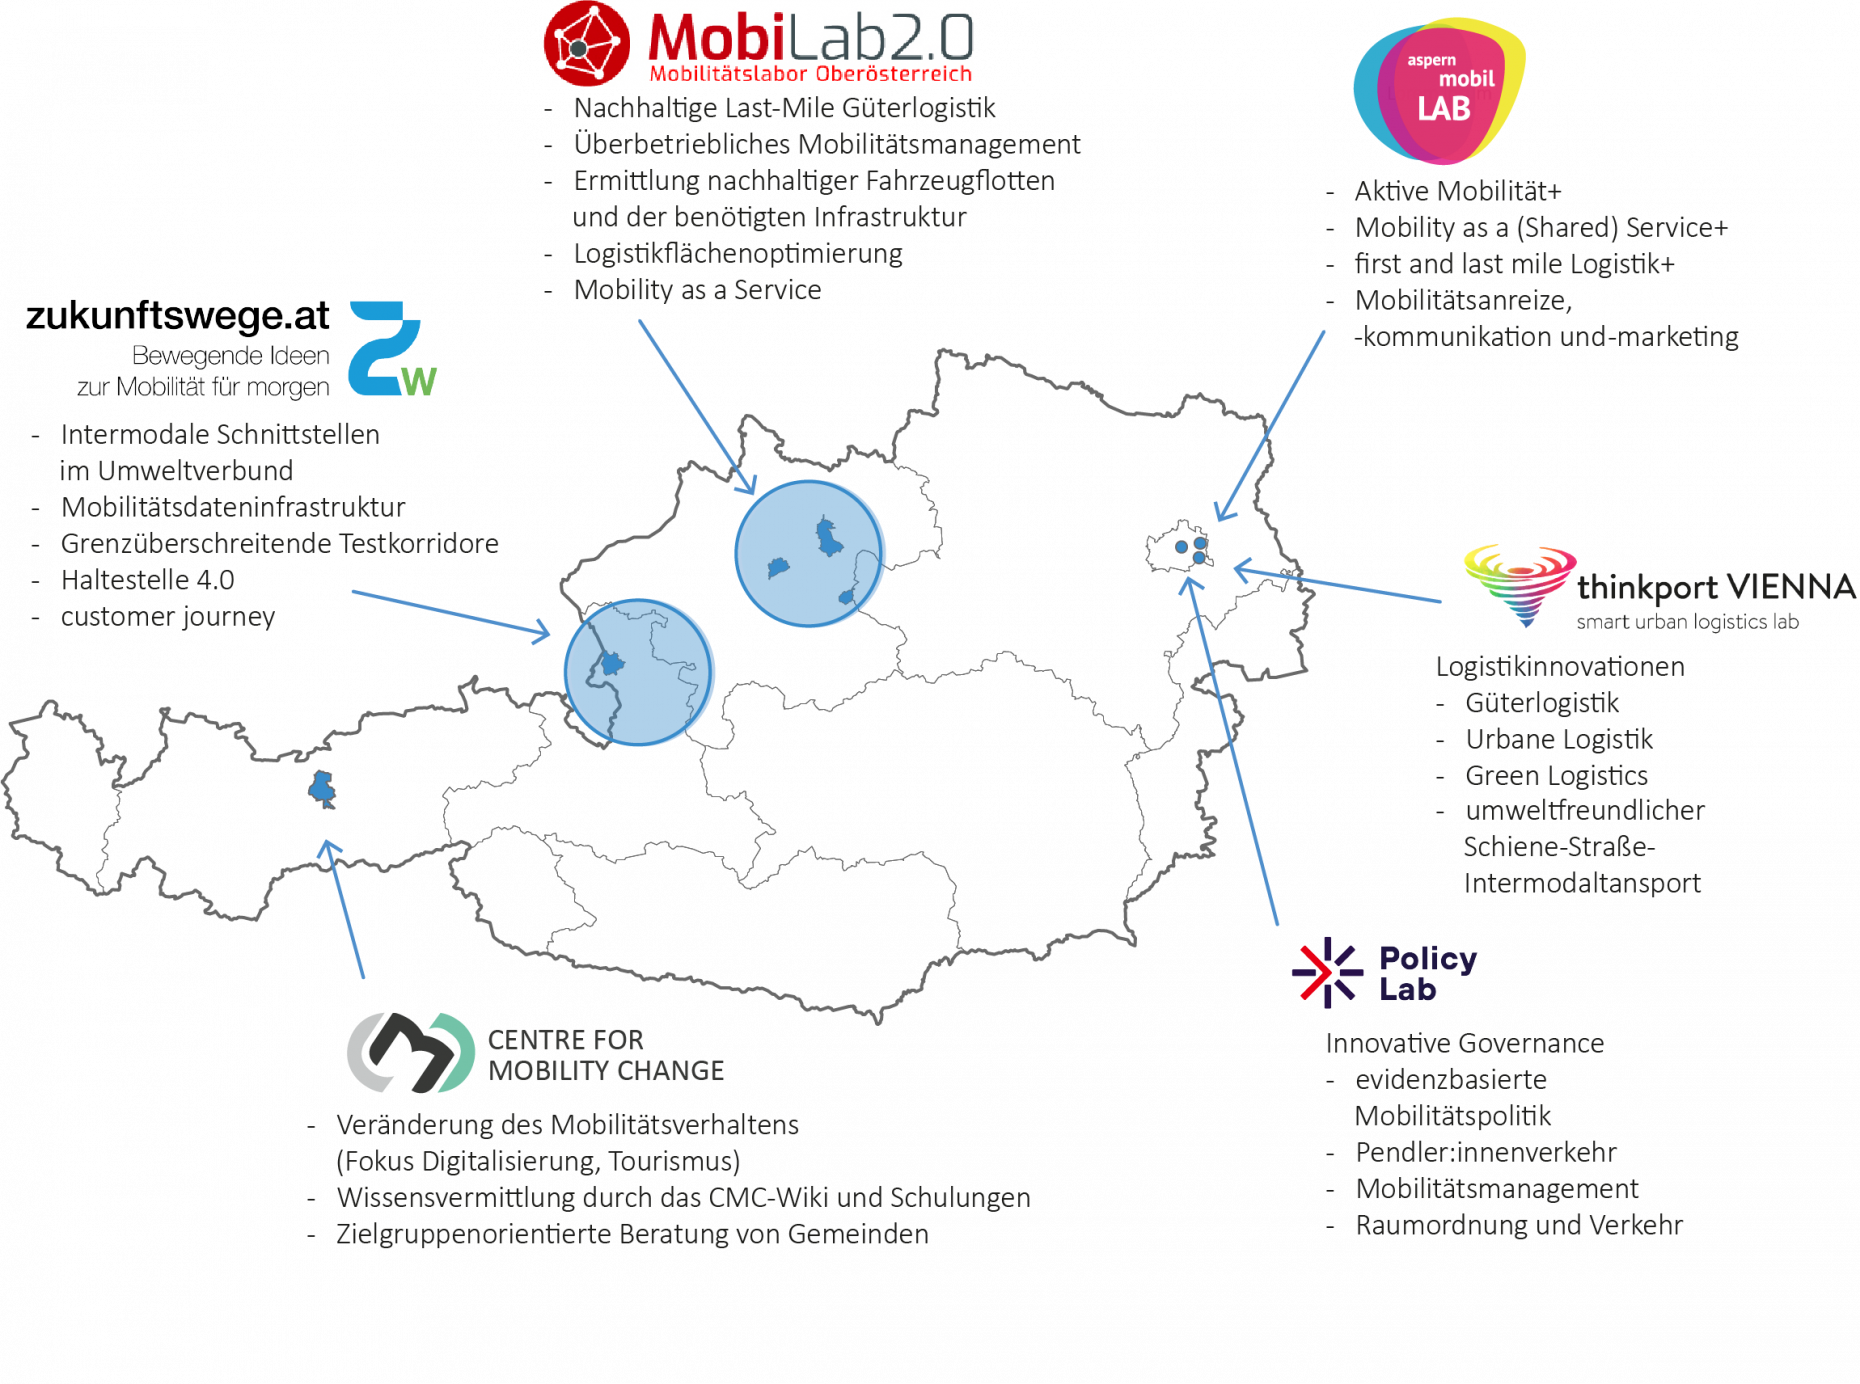 Das Bild zeigt eine Österreich Landkarte, in der die vier urbanen Mobilitätslabore, das Center for Mobility Change und das Policy-Lab.at verortet sind. Außerdem werden die Themenschwerpunkte der einzelnen Mobilitätslabore beschrieben.